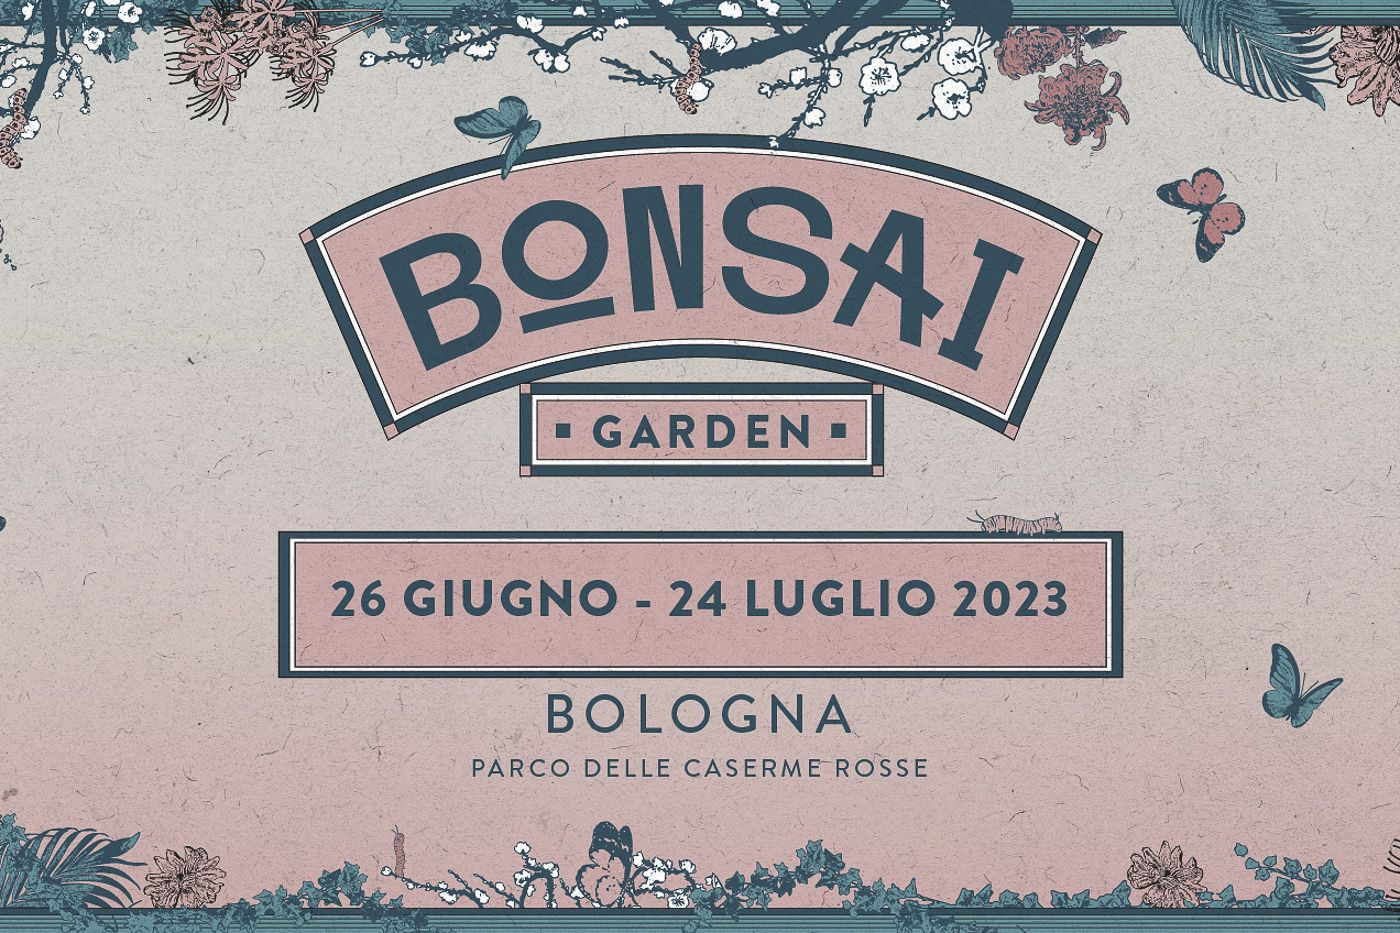 Dal 26 giugno al 24 luglio torna BOnsai Garden! La rassegna musicale del Parco delle Caserme Rosse di Bologna